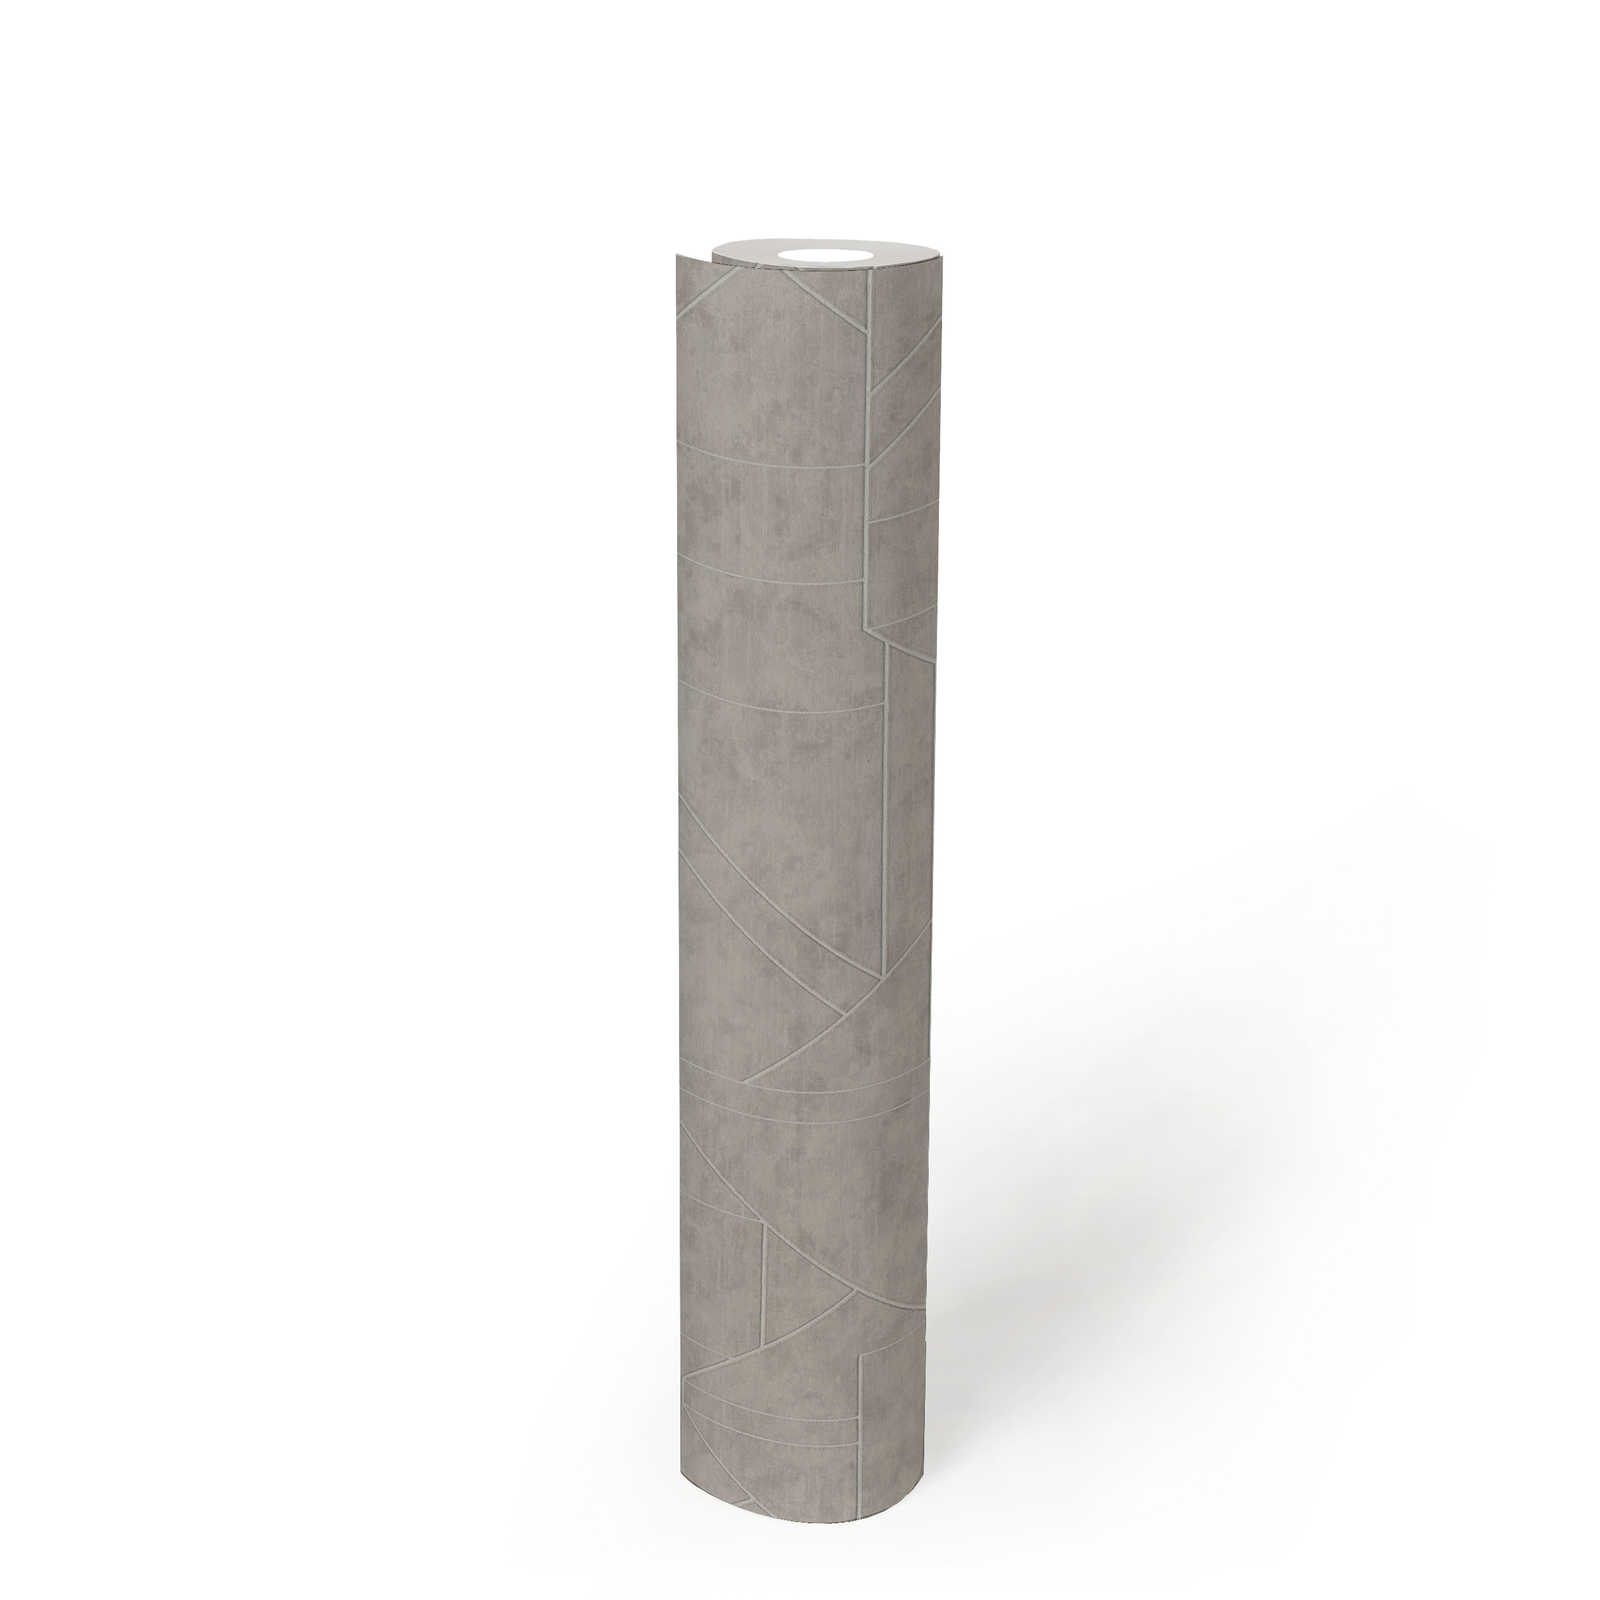             Grafische Vliestapete mit Linienmuster – Grau, Silber
        